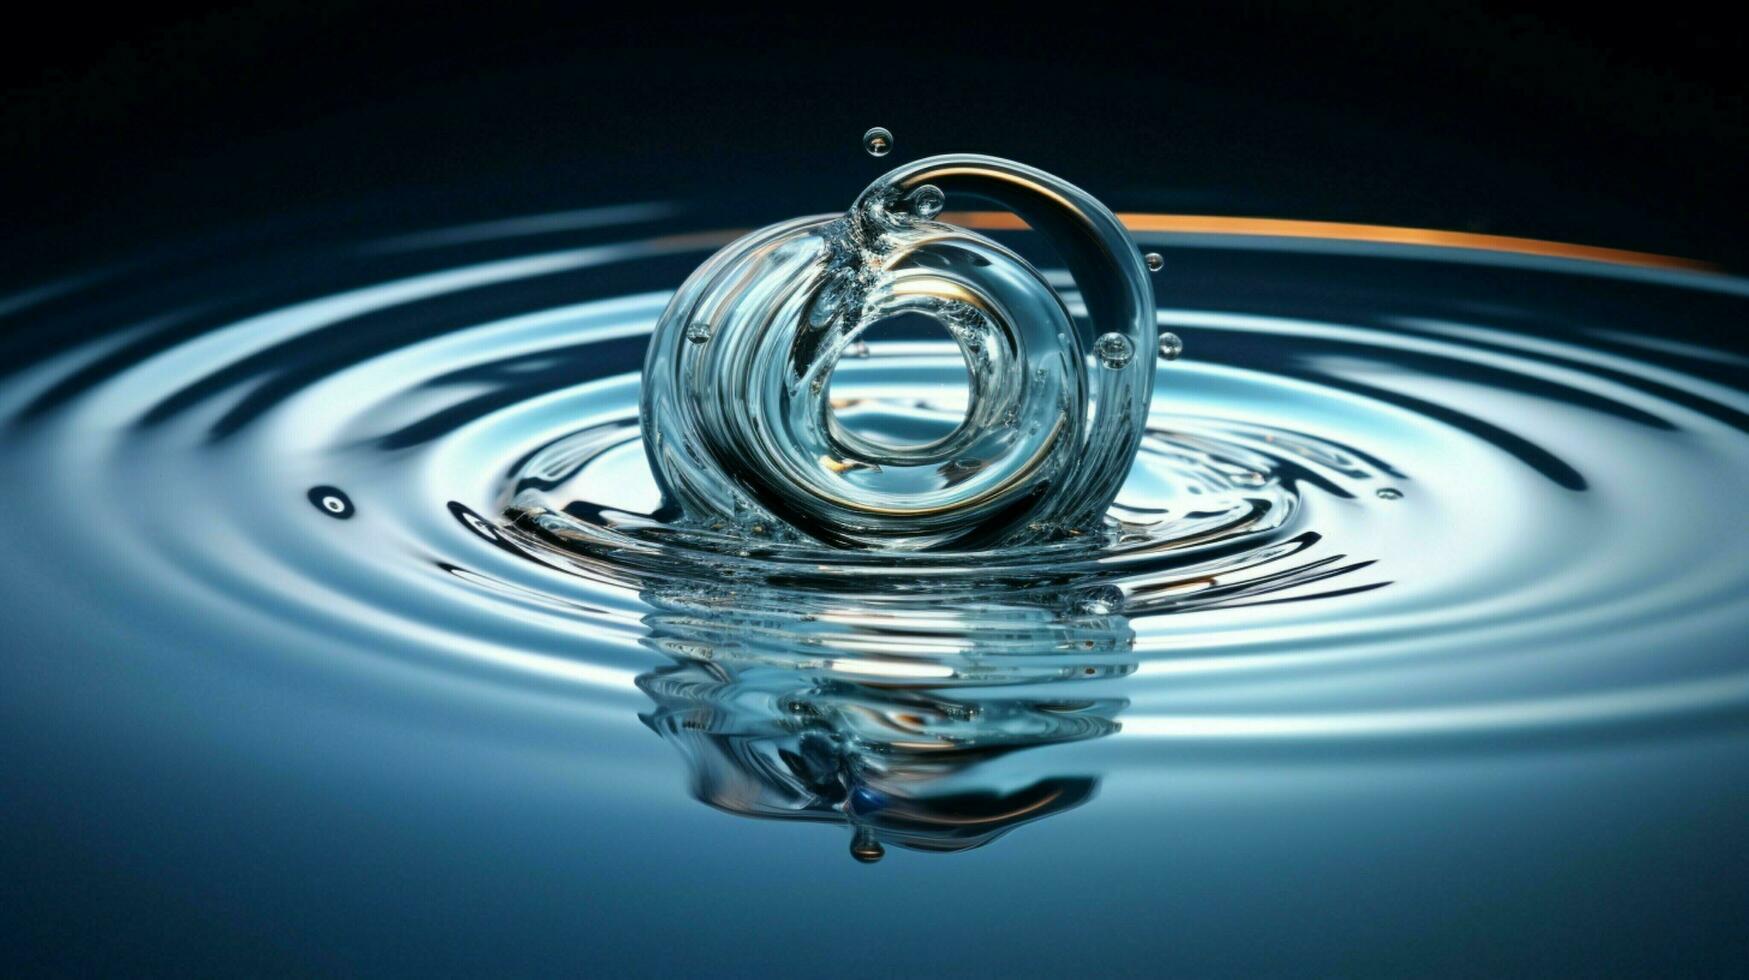 uma gotícula cai refletindo onda padrões em água foto